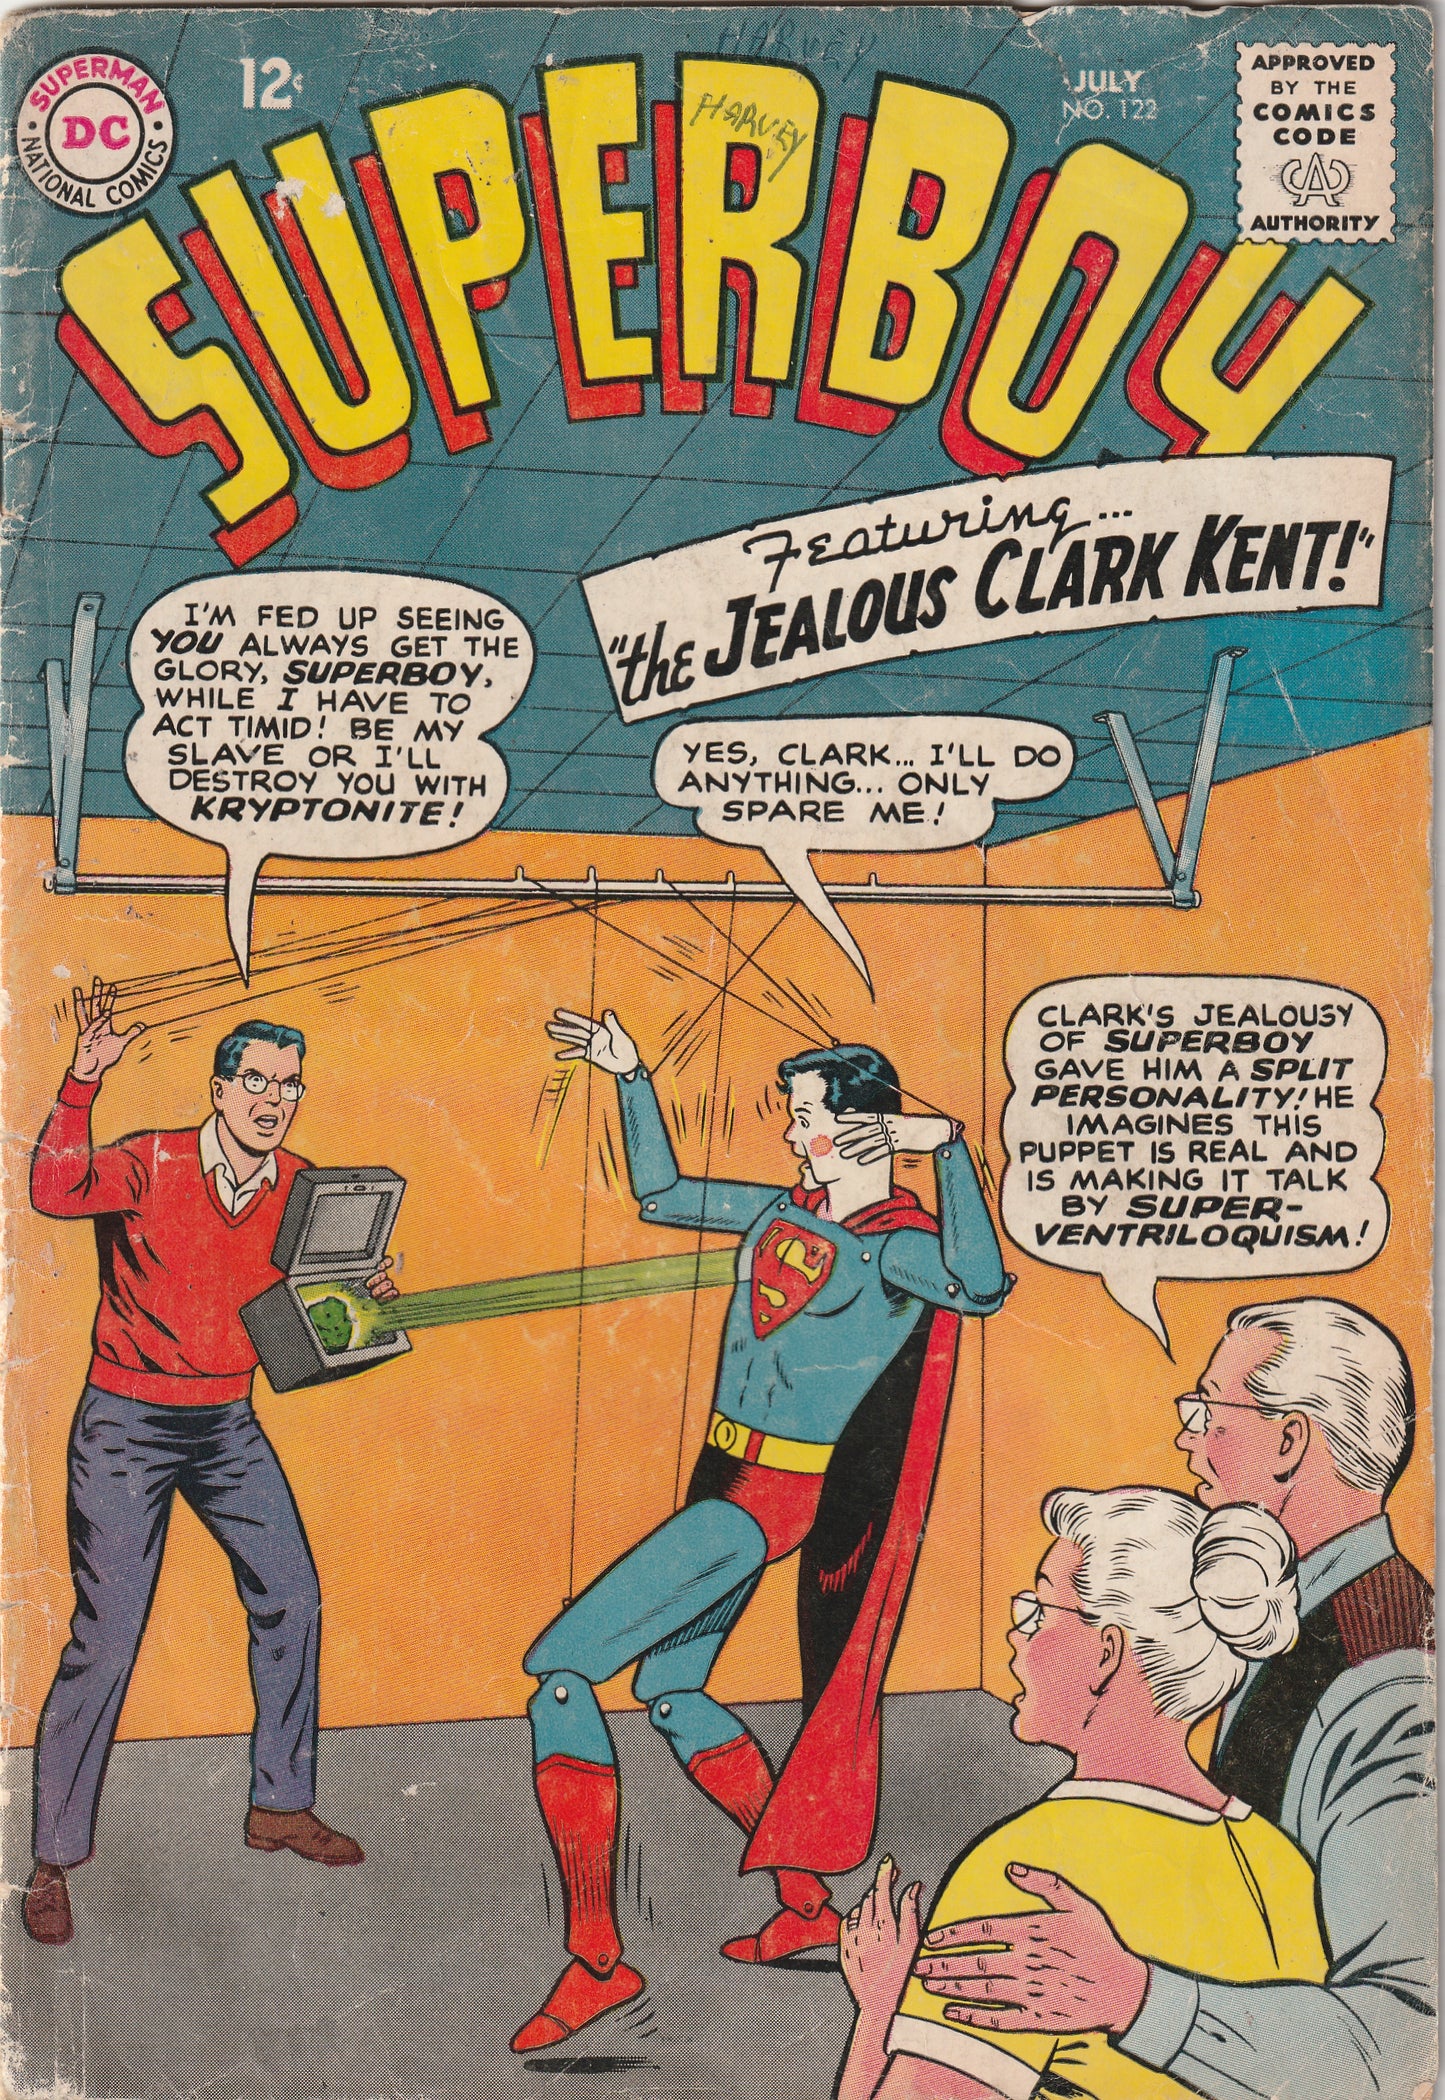 Superboy #122 (1965)